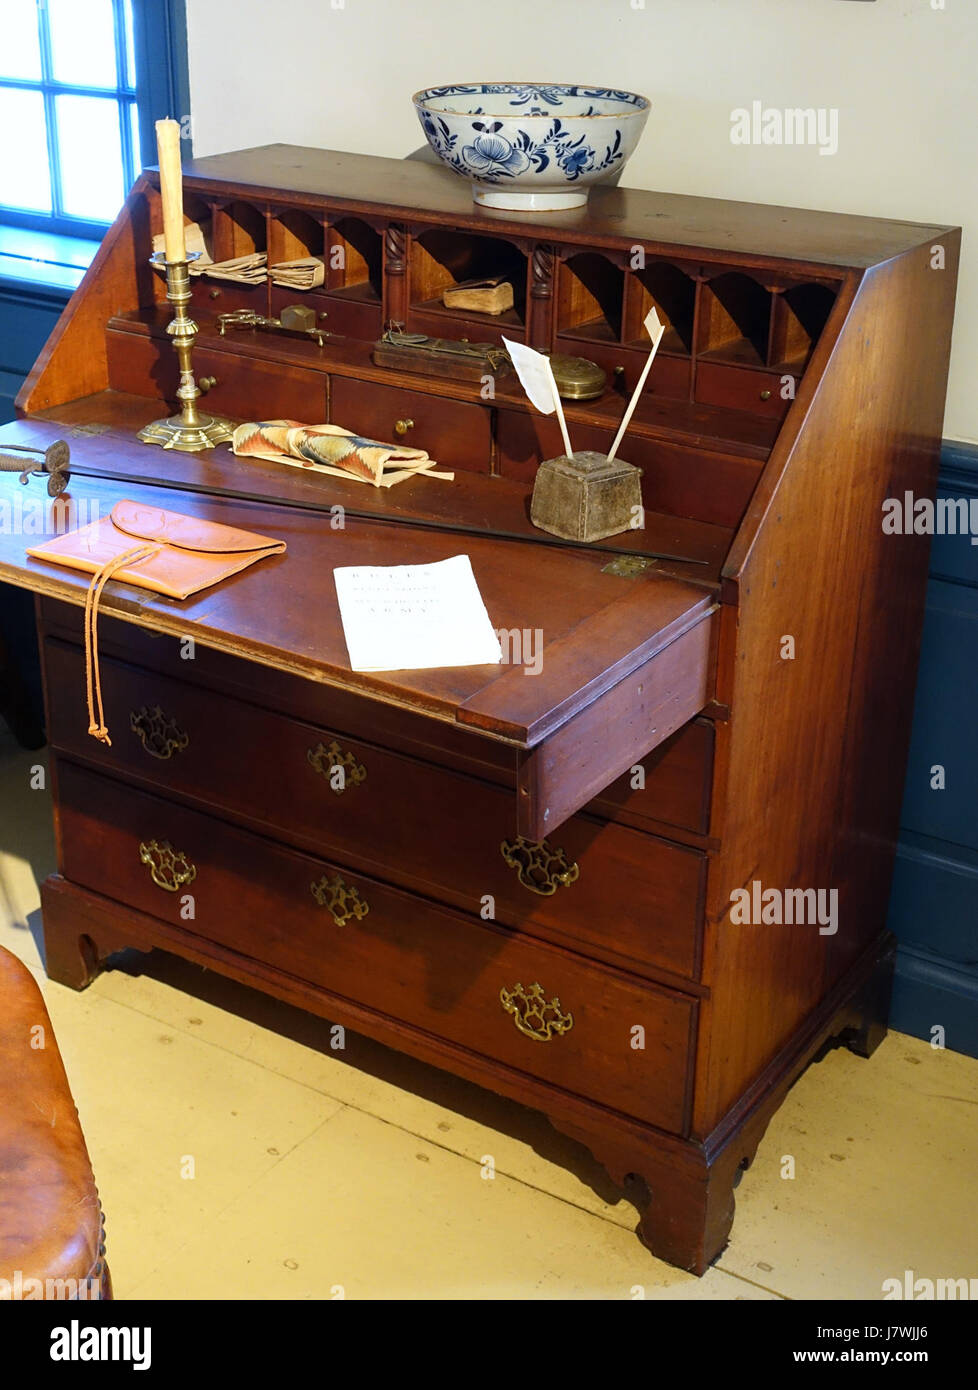 Bureau desk, New England, 1750 1775, cherry   Concord Museum   Concord, MA   DSC05677 Stock Photo